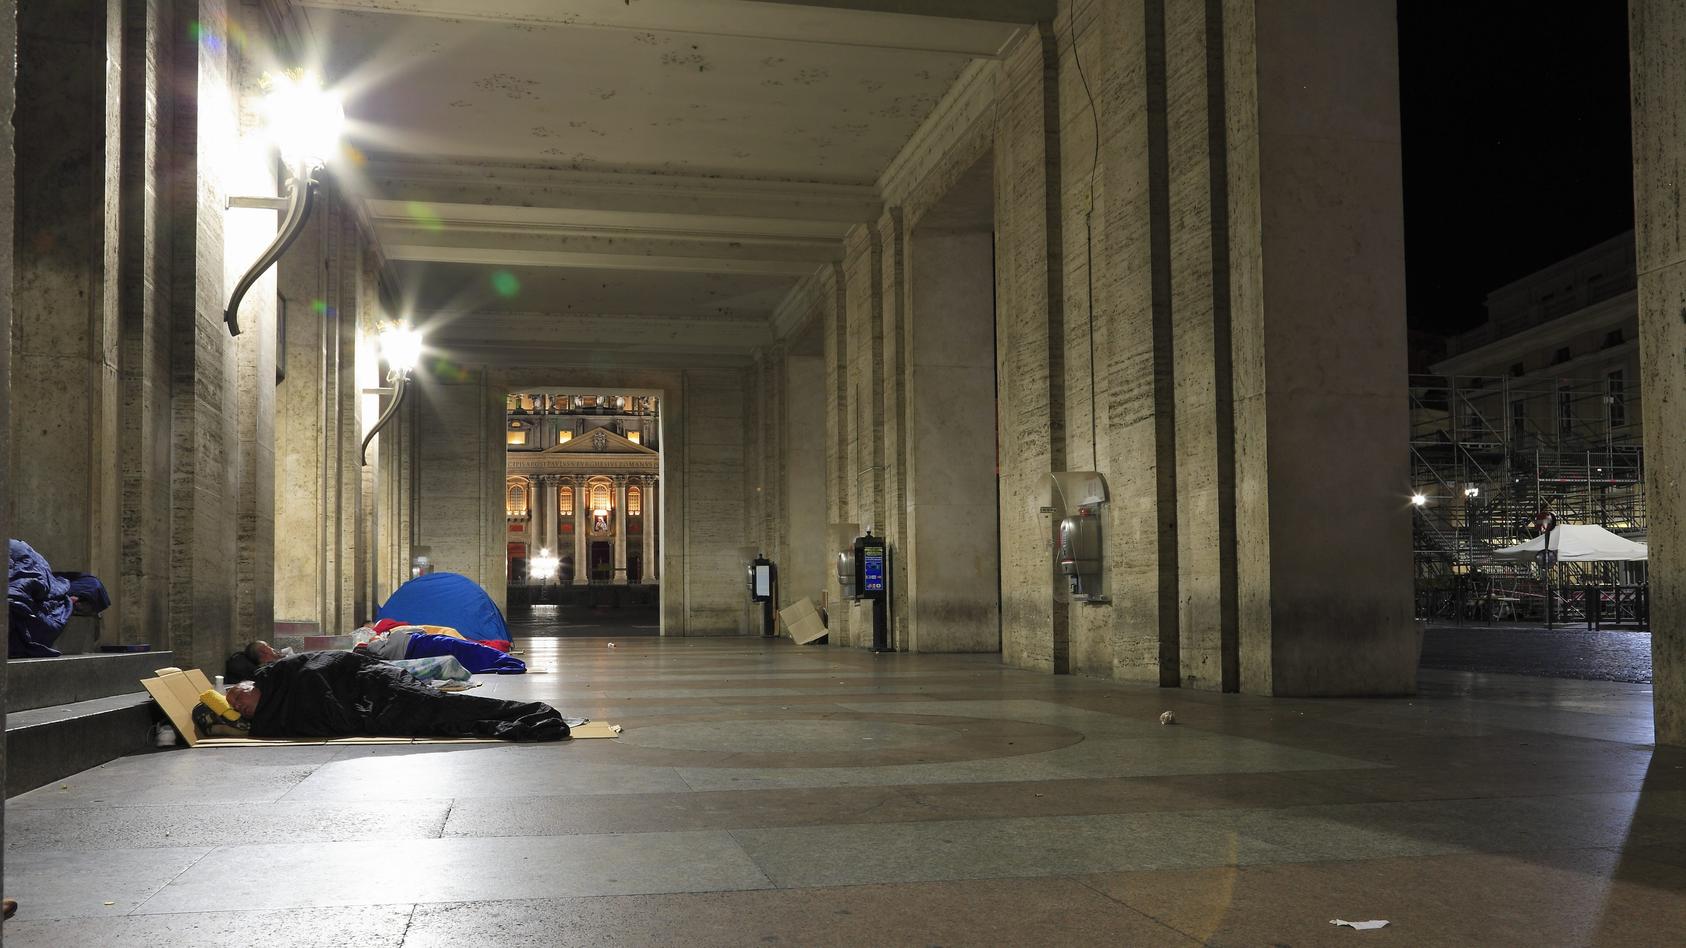 Obdachlose schlafen in der Vorhalle der Opera Romana Pellegrinaggi unweit des Petersplatzes. Im Bildhintergrund sind ein Teil des Petersplatzes sowie ein Teil des Petersdomes zu sehen. Ueber dem Hauptportal des Petersdomes ist noch das Bild von Mutte